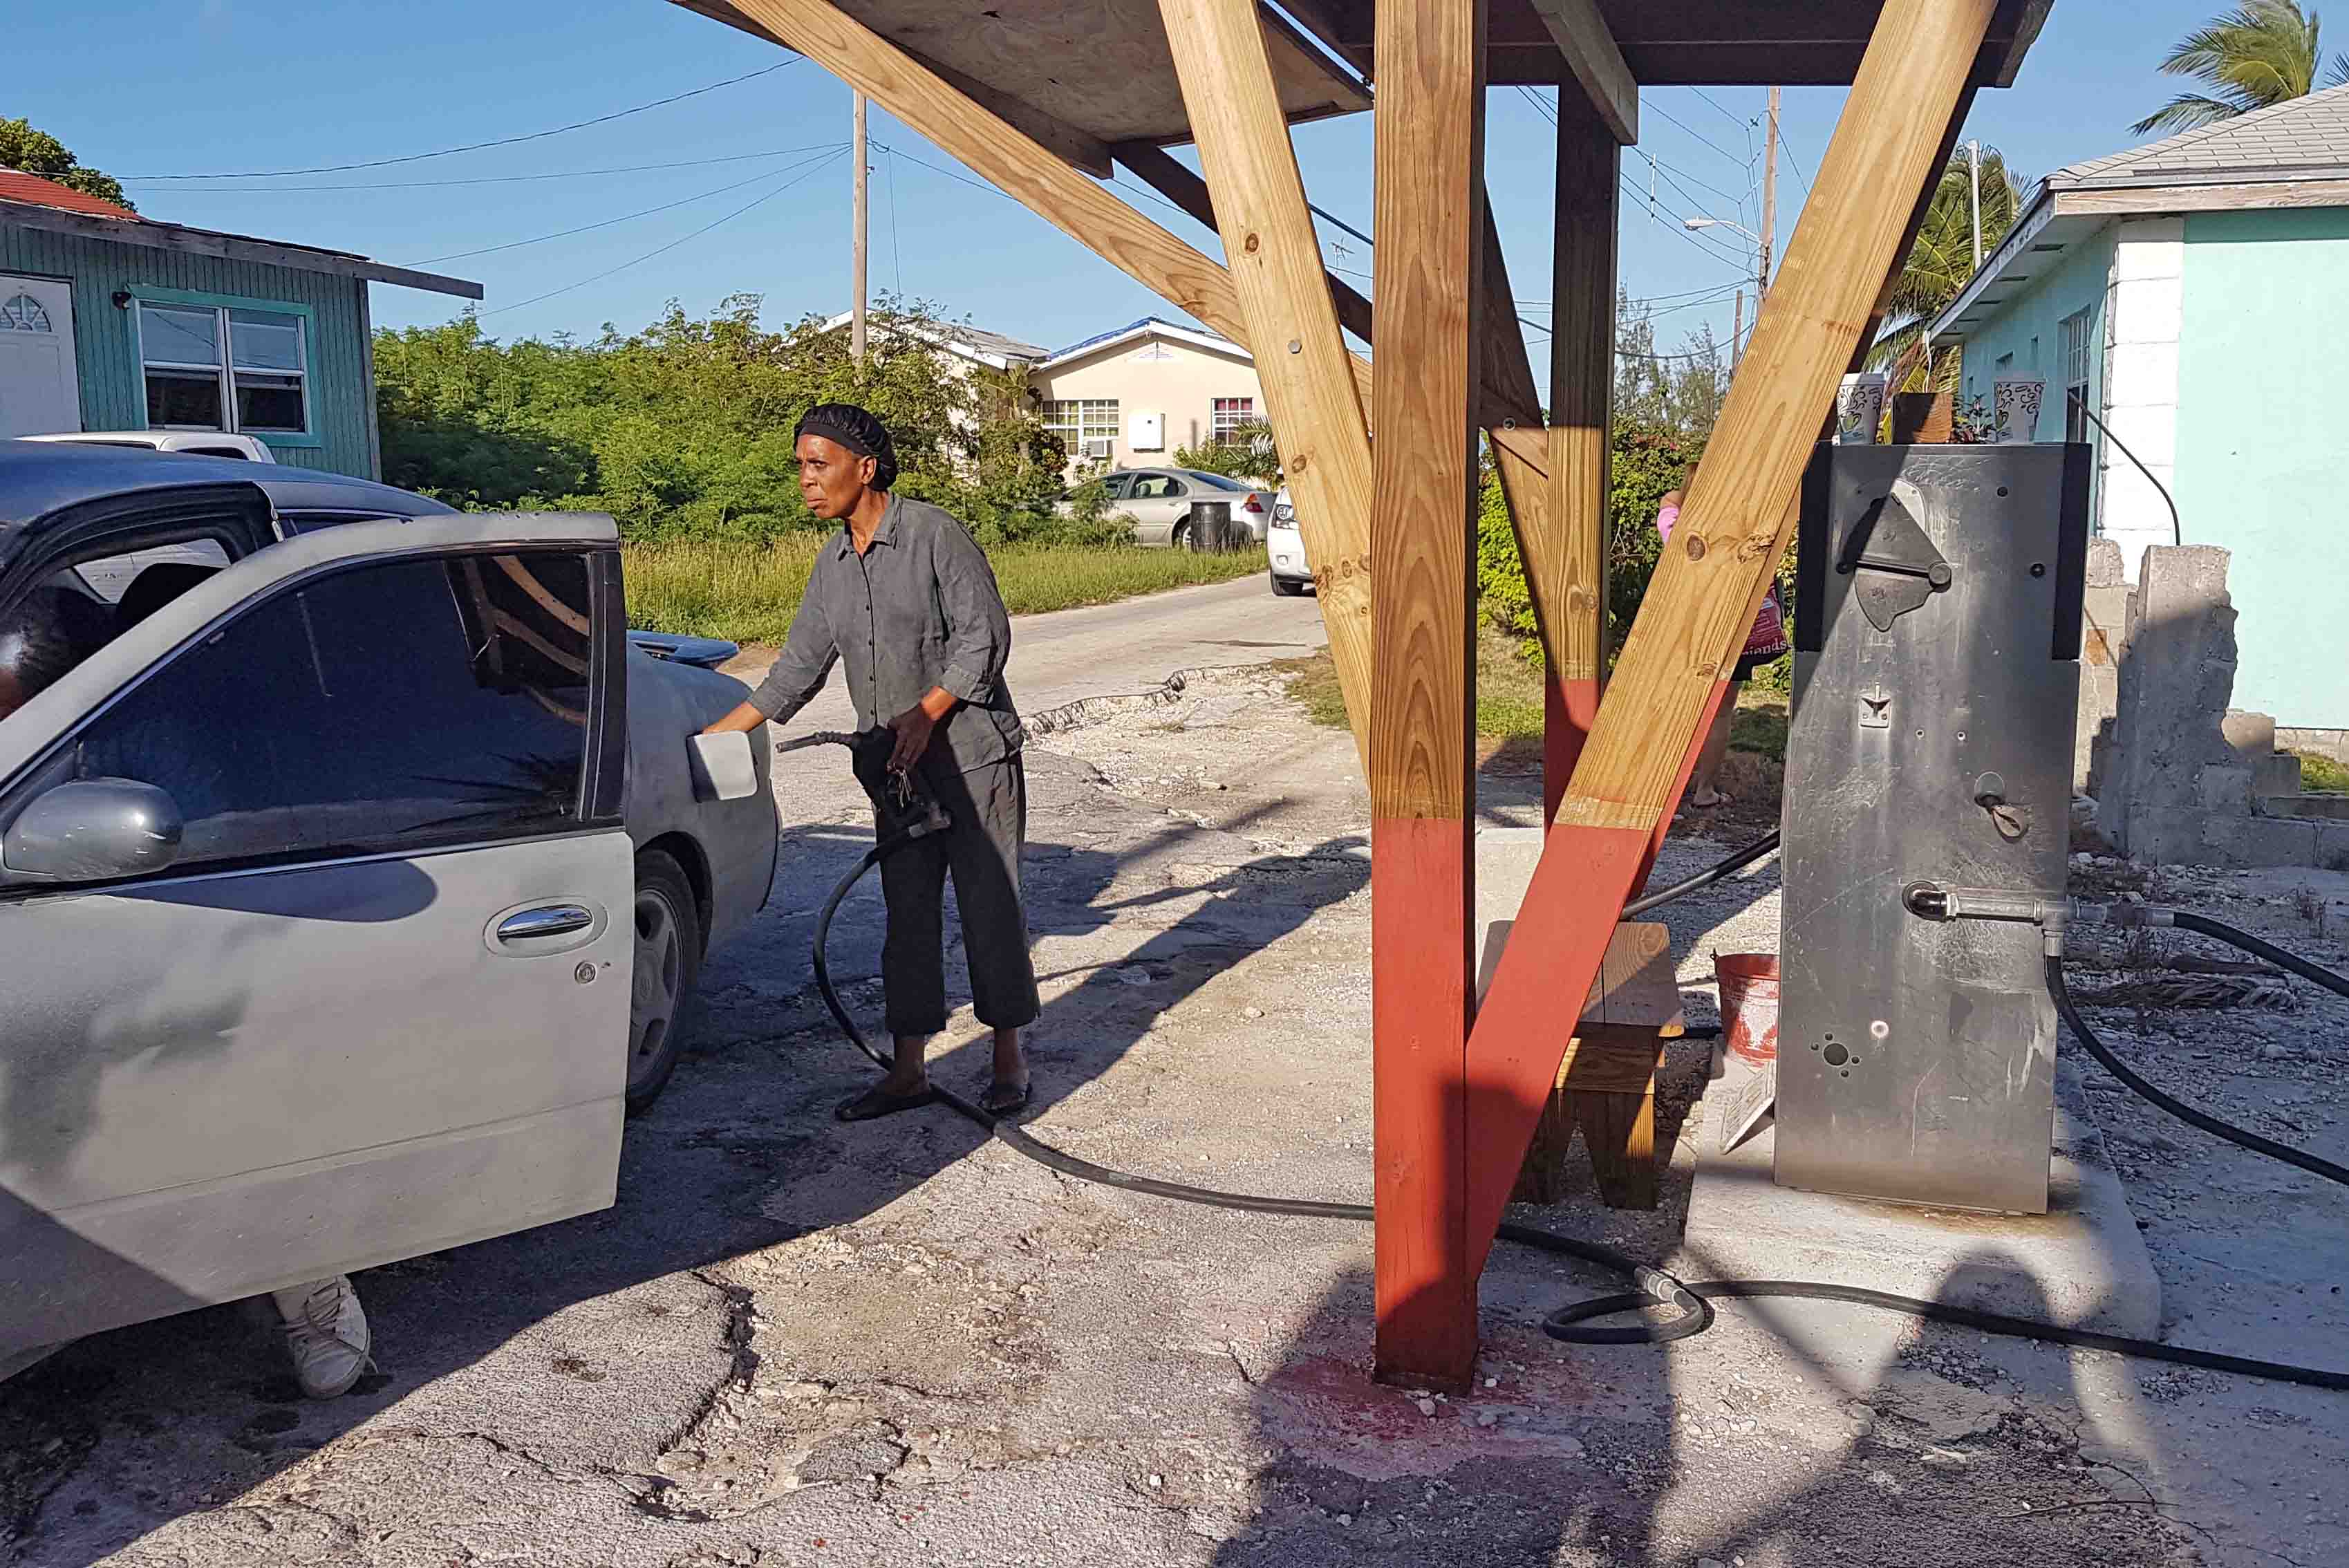 Posto de gasolina na ilha de Great Exuma, Bahamas - Tudo muito rústico!